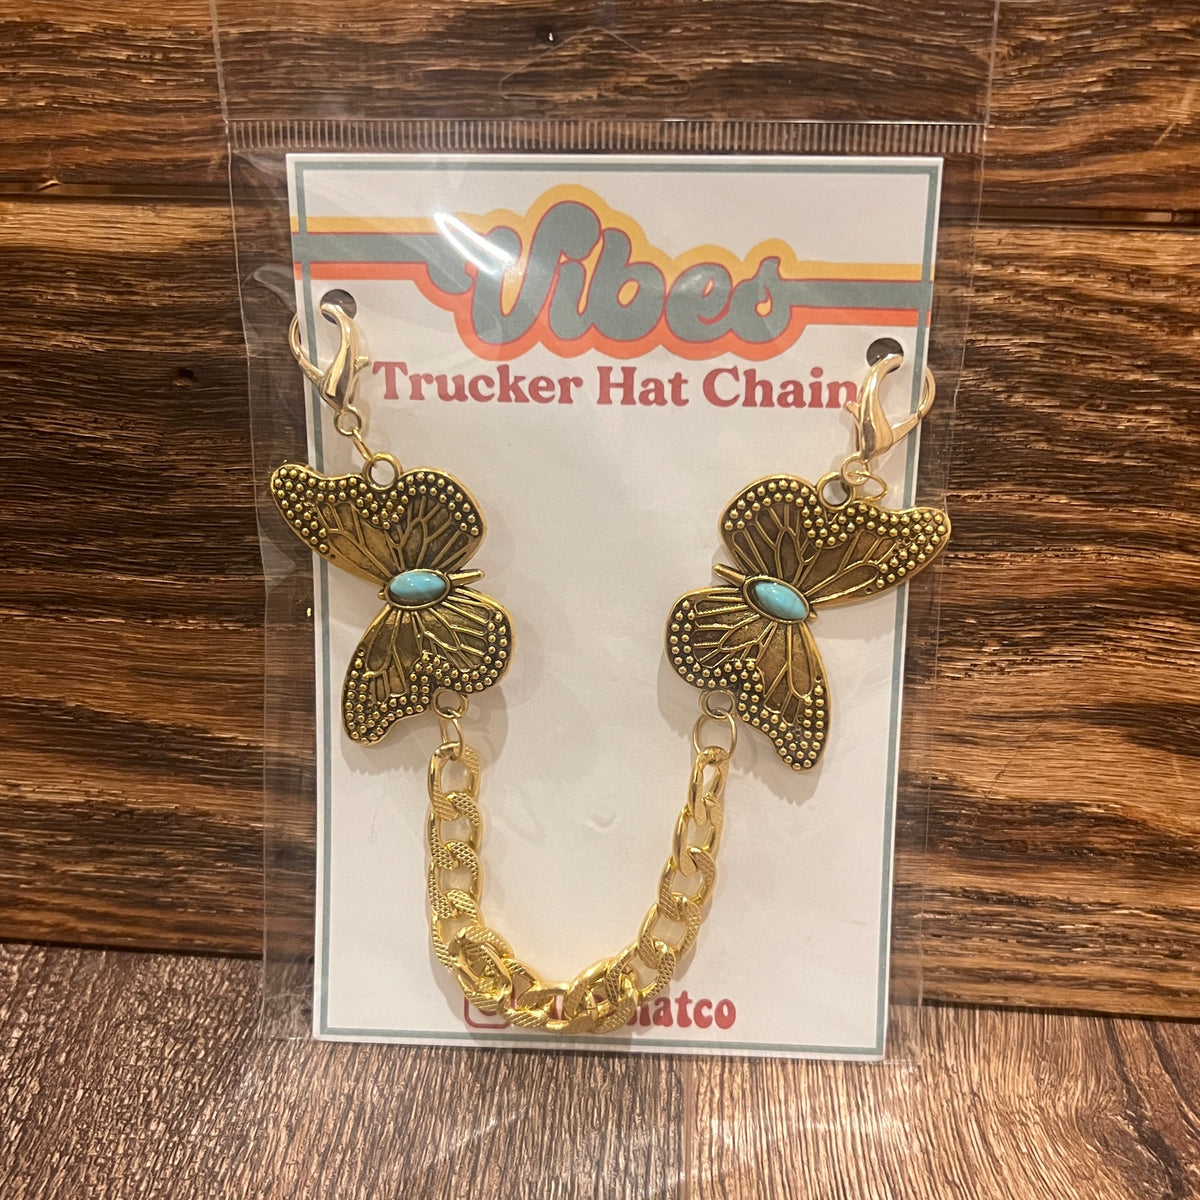 Fancy Trucker Chains | Trucker Hat Chains - By Haute Sheet